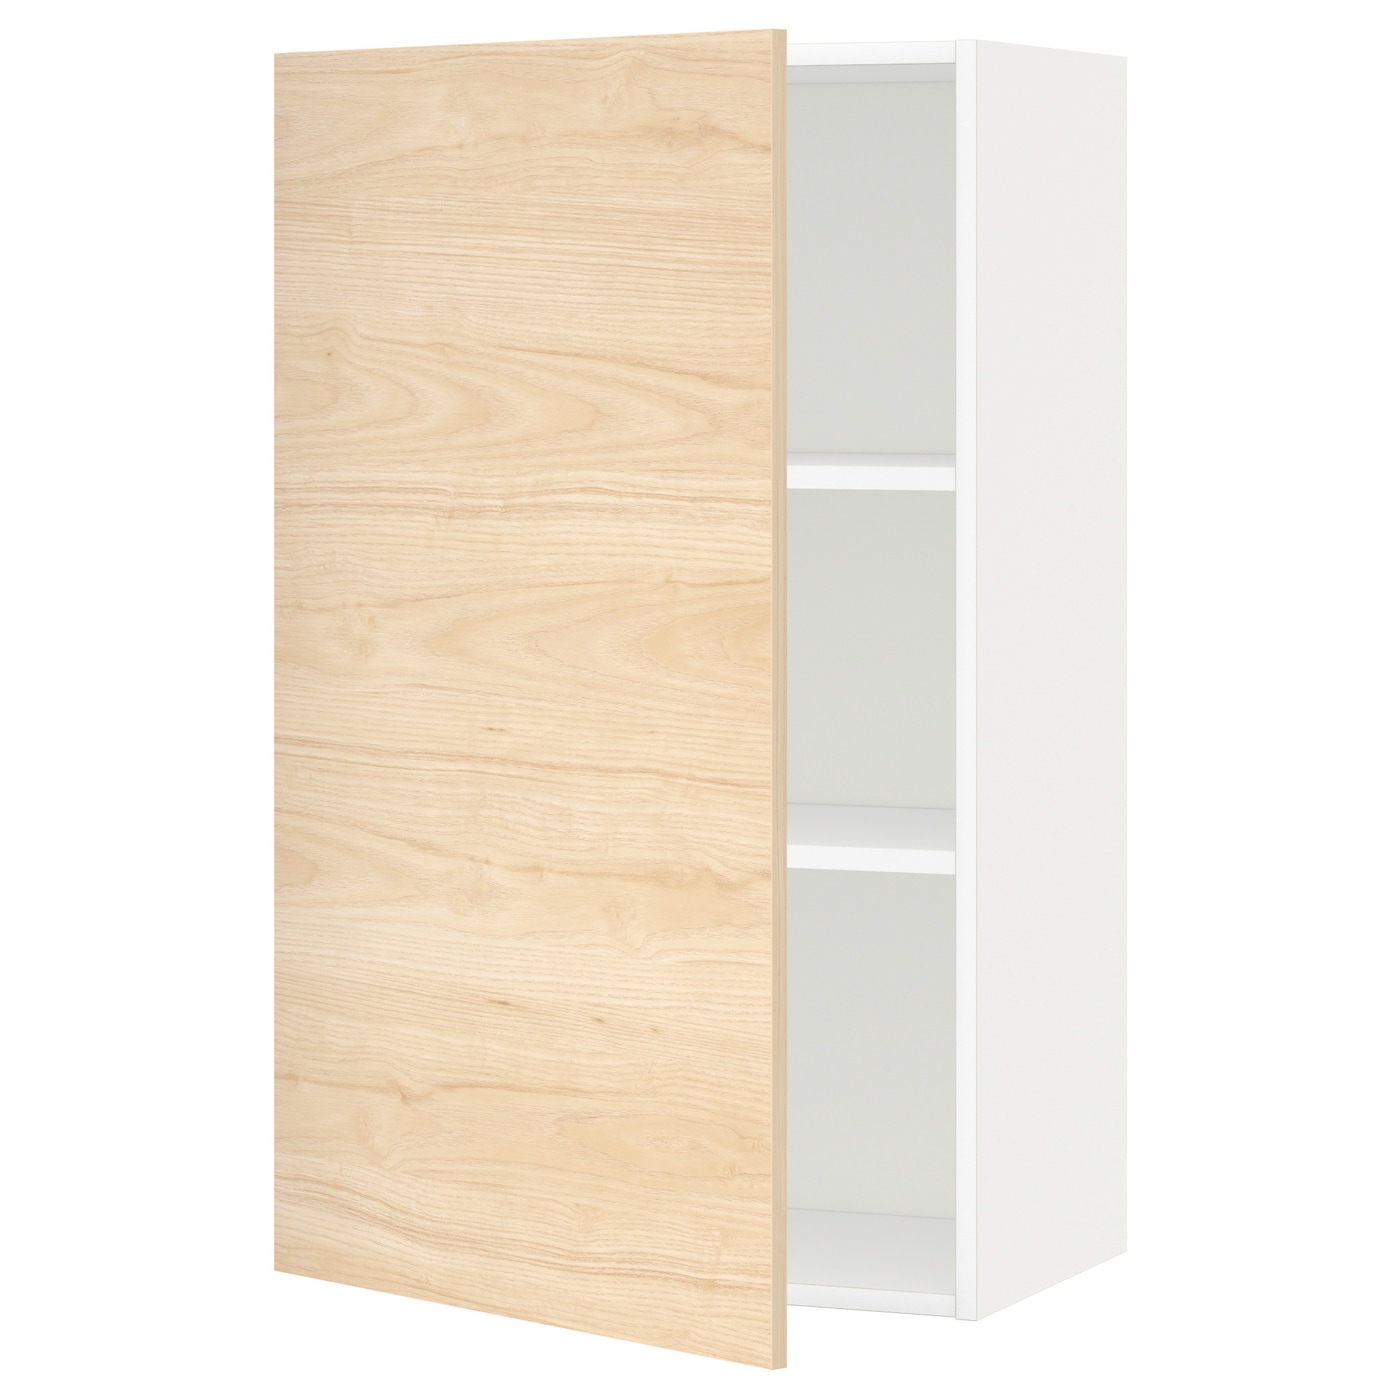 Навесной шкаф с полкой - METOD IKEA/ МЕТОД ИКЕА, 100х60 см, белый/под беленый дуб